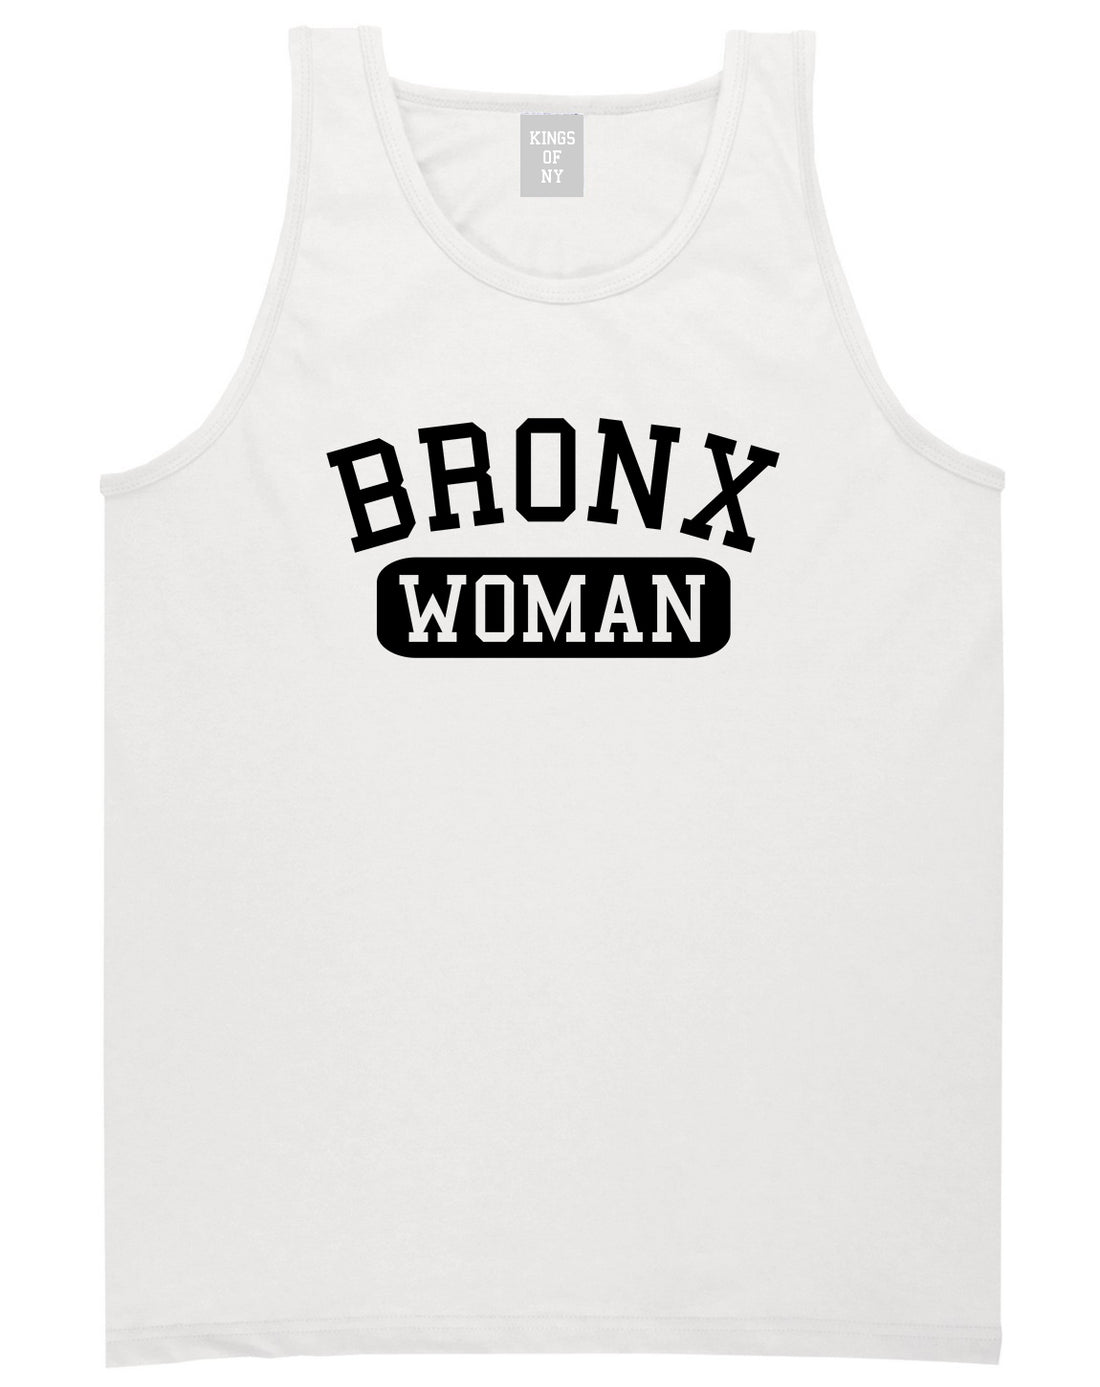 Bronx Woman Mens Tank Top T-Shirt White